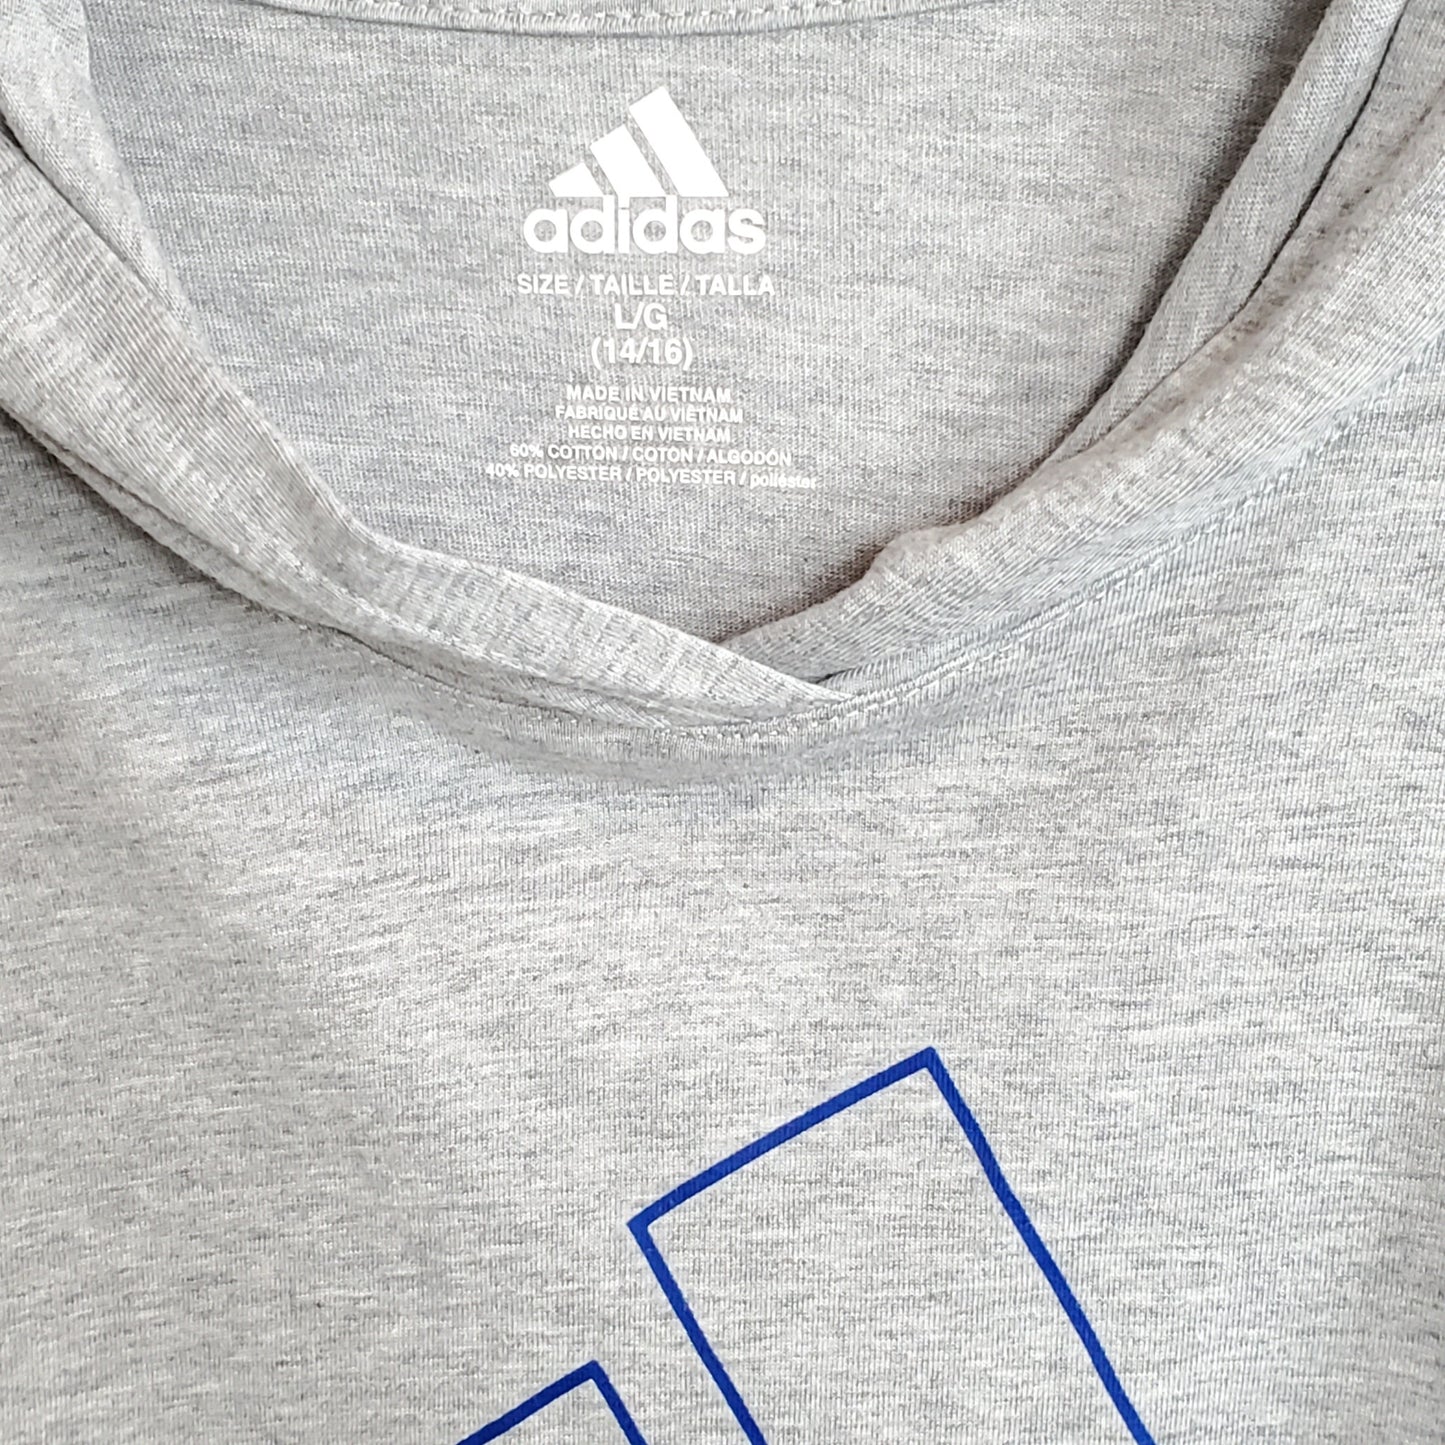 Adidas Boys Grey Logo Hooded Shirt Size 14 Used, close-up